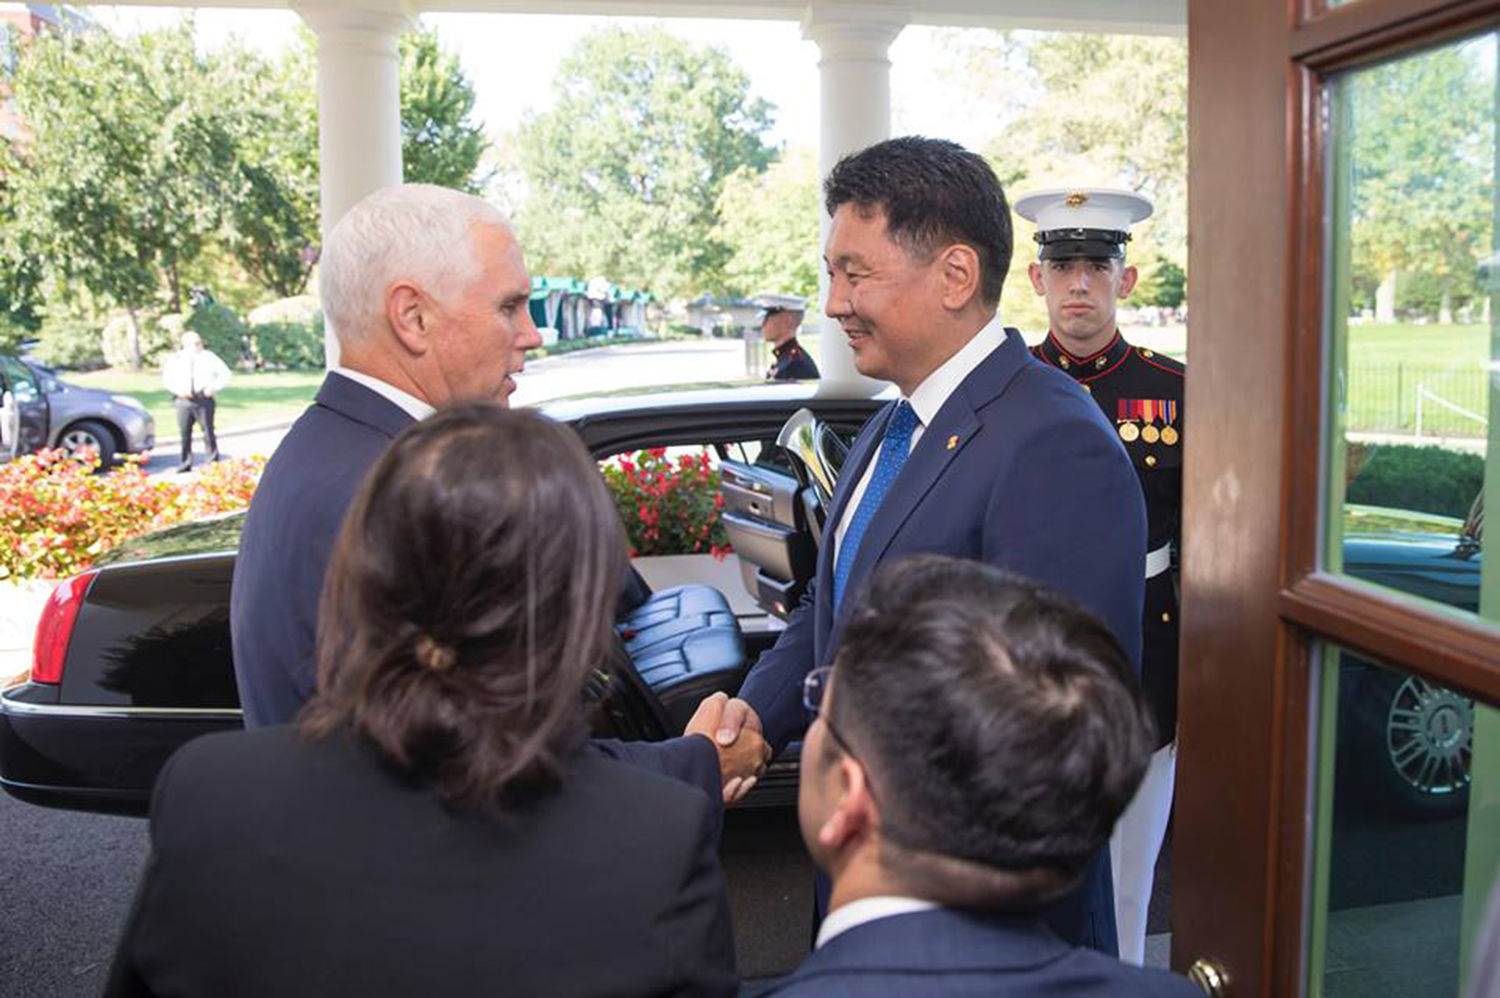 АНУ-ын дэд ерөнхийлөгч “протокол зөрчив”. Учир нь АНУ-ын дэд ерөнхийлөгчийн албан уулзалт албаны өрөөнд болоод л өнгөрдөг. Энэ удаа Монгол Улсын Ерөнхий сайдтай дотночлон уулзаж арын өрөөндөө ч урилаа.